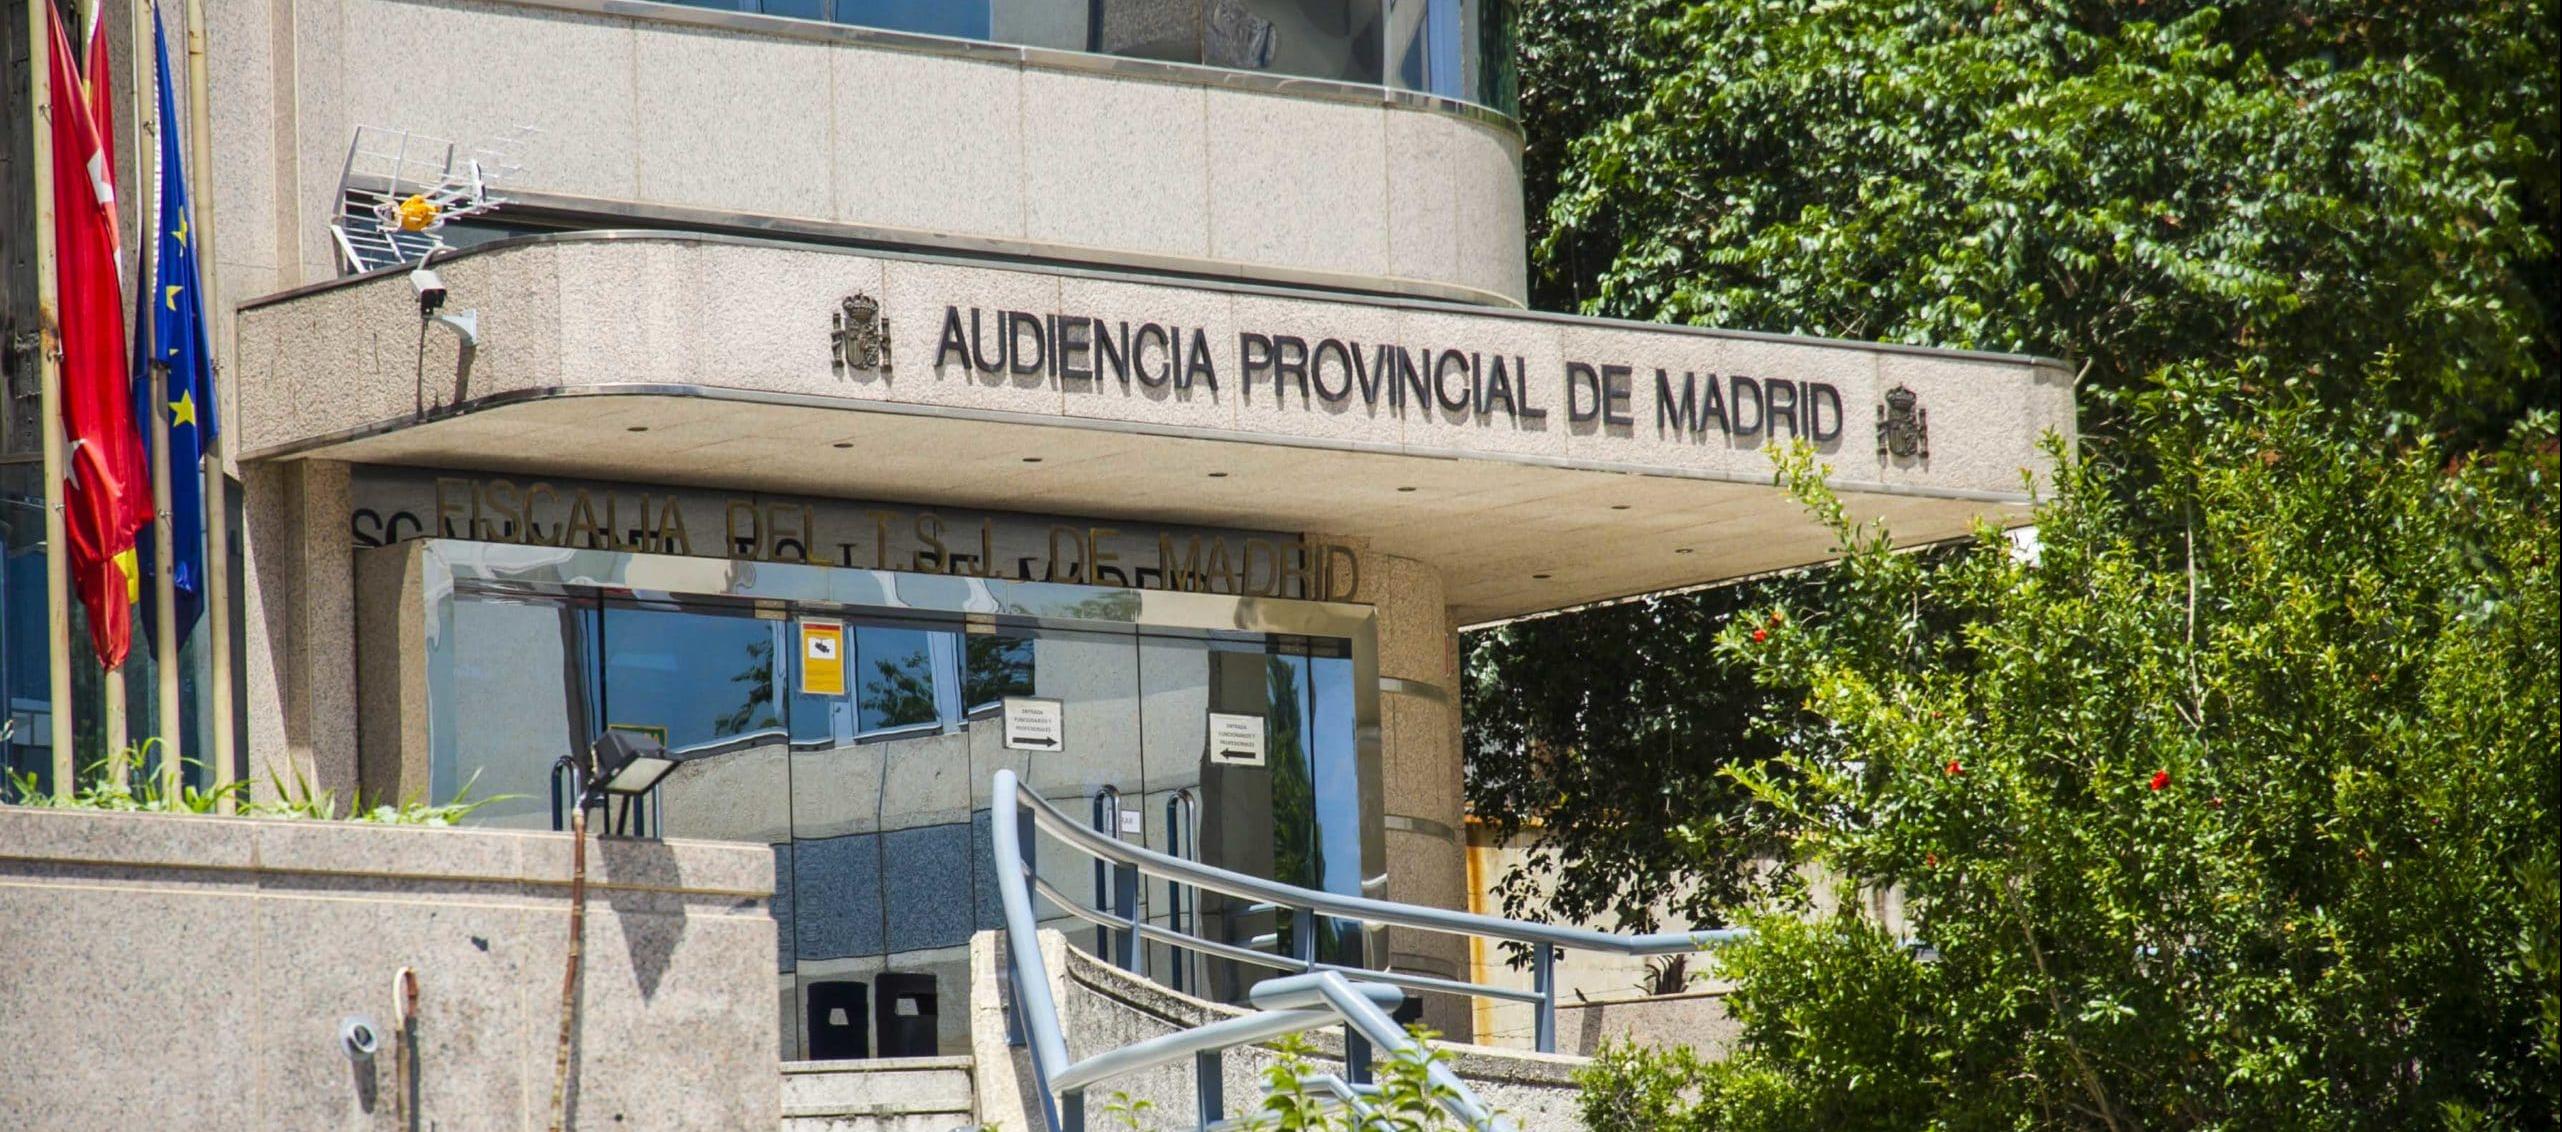  Audiencia Provincial de Madrid. 